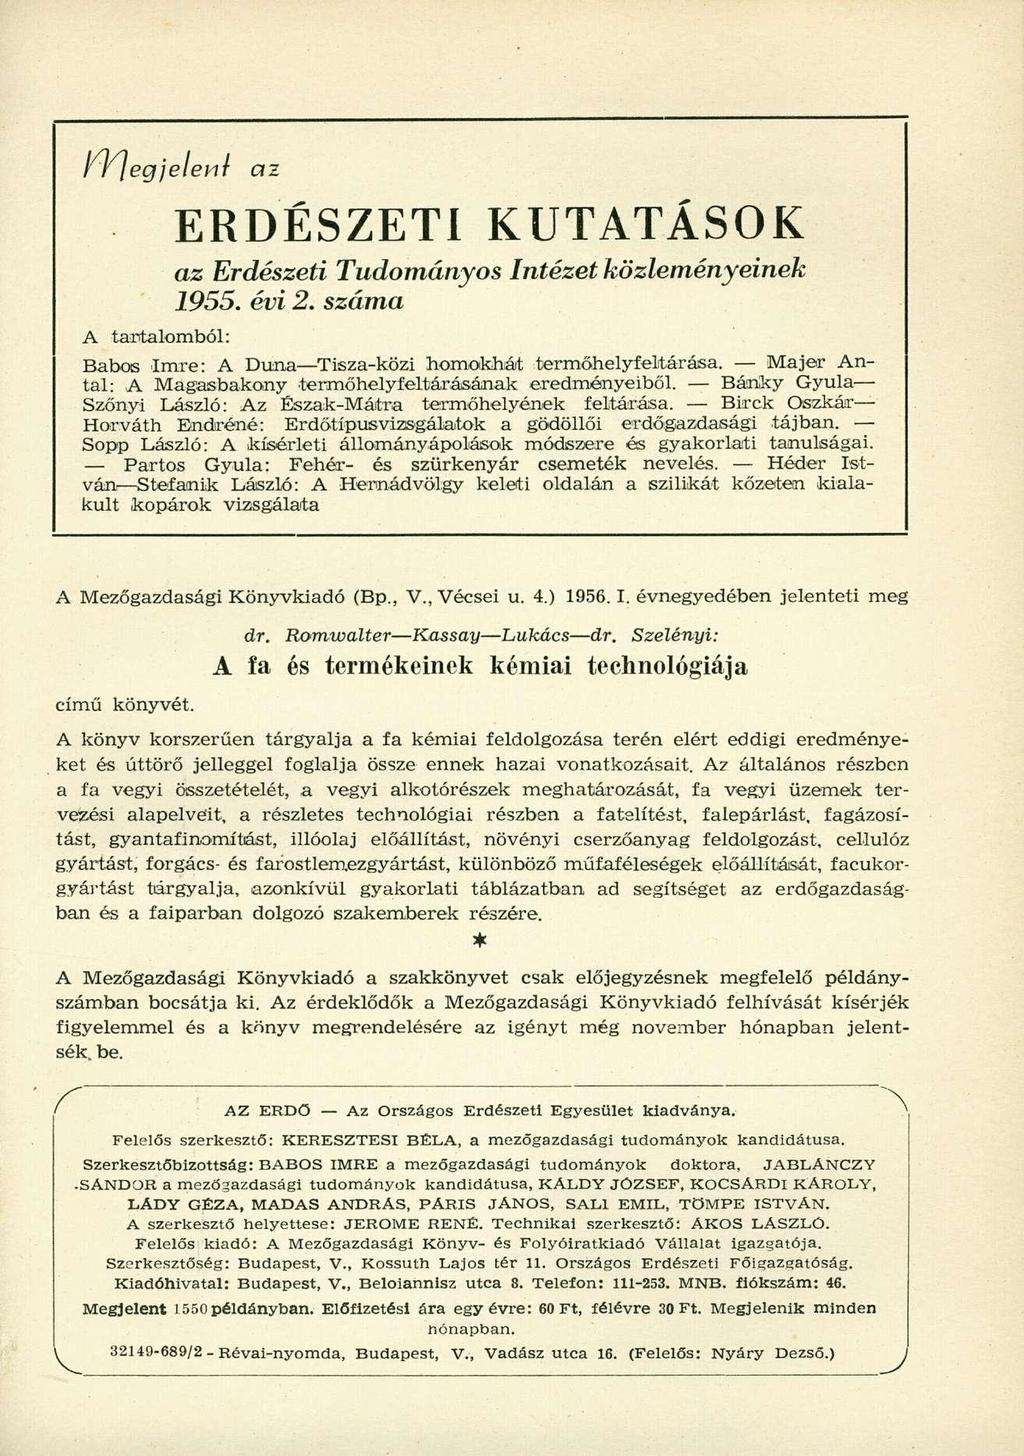 A tantalomból: ERDÉSZETI KUTATÁSOK az Erdészeti Tudományos Intézet közleményeinek 1955. évi 2. száma Babos Imre: A Duna Tisza-közi homokhát termőhelyfeltárása.